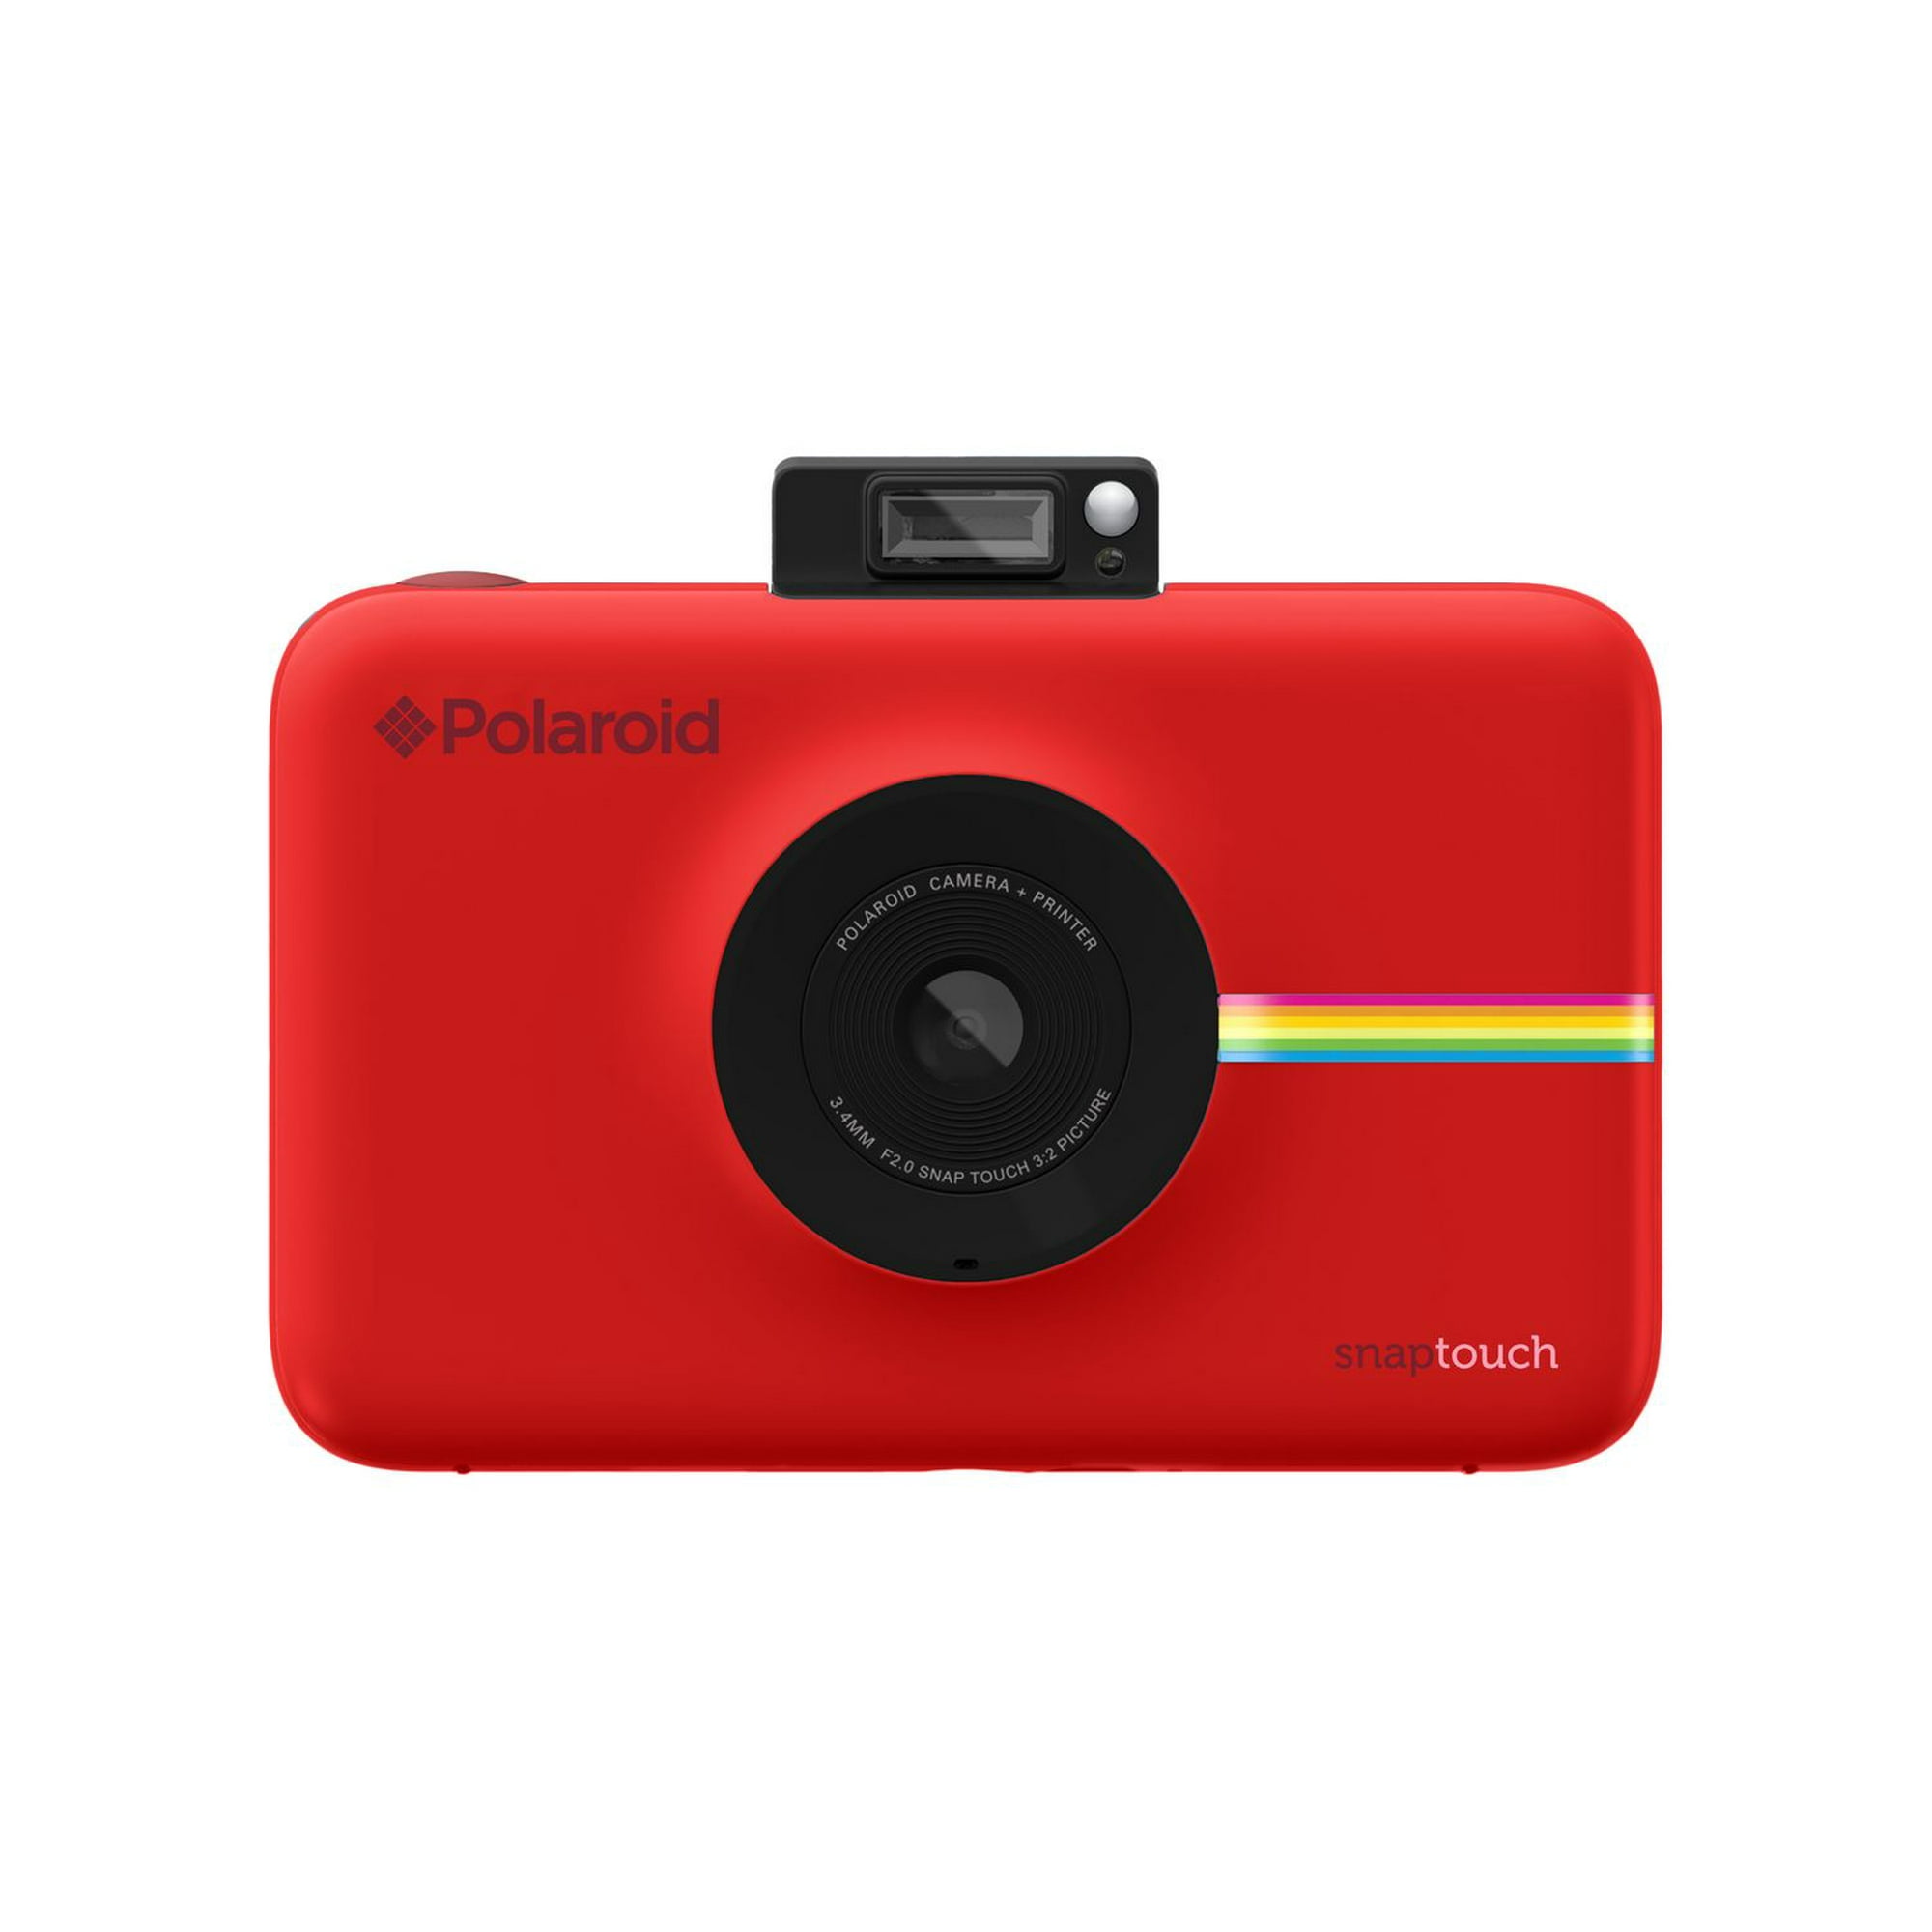 Rouge-Appareil photo étanche pour enfants, Full HD, 2023 P, appareil photo  portable, vidéo numérique, 4x, ca